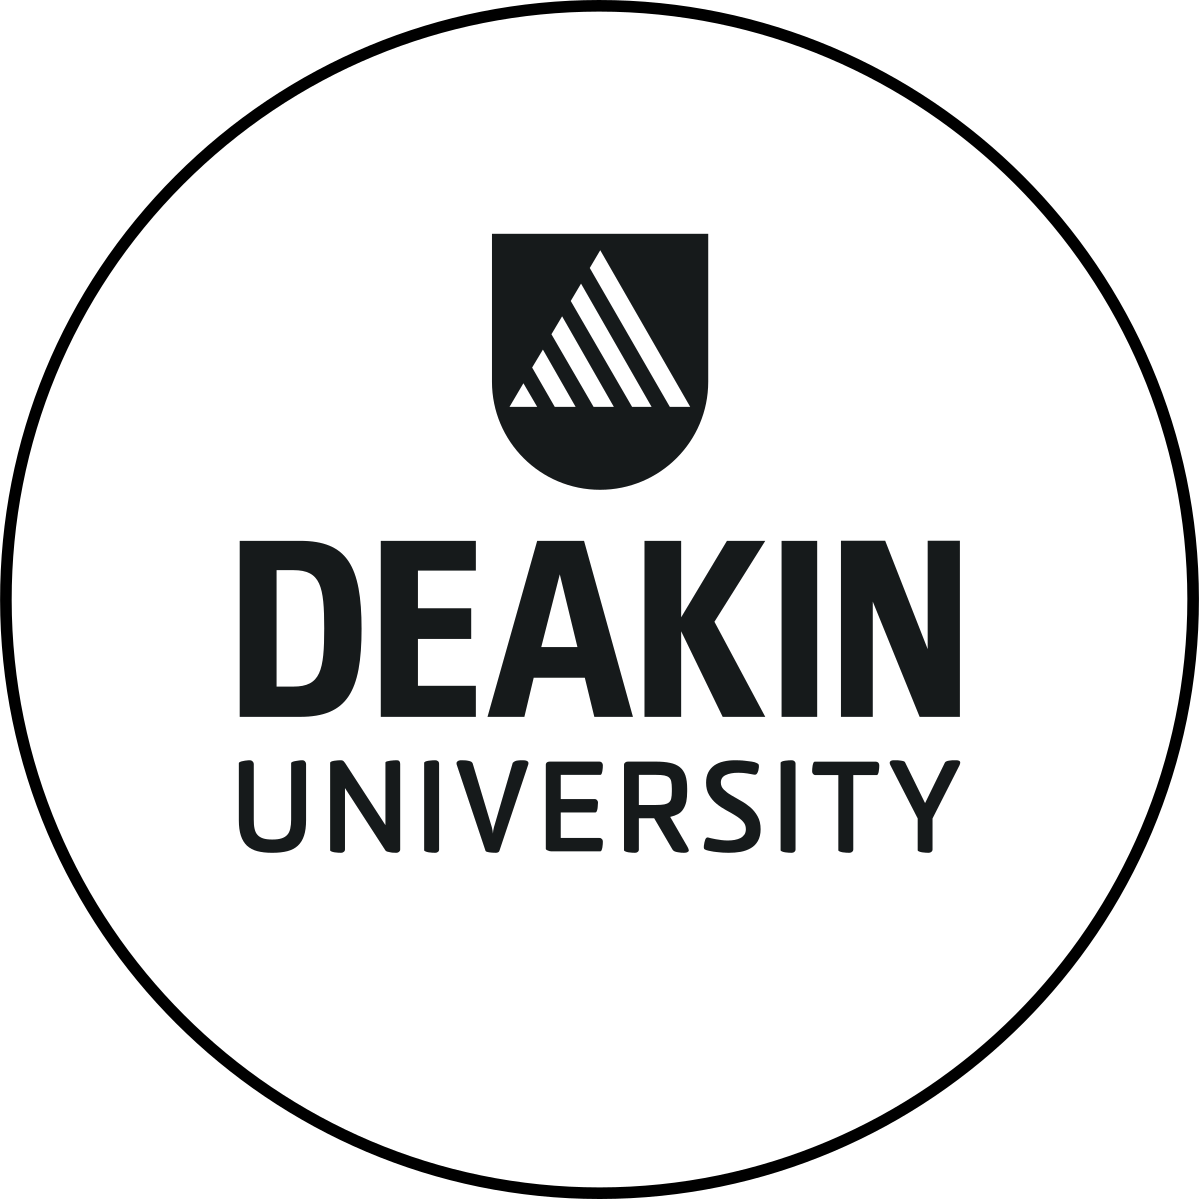 جامعة ديكين في استراليا Deakin University